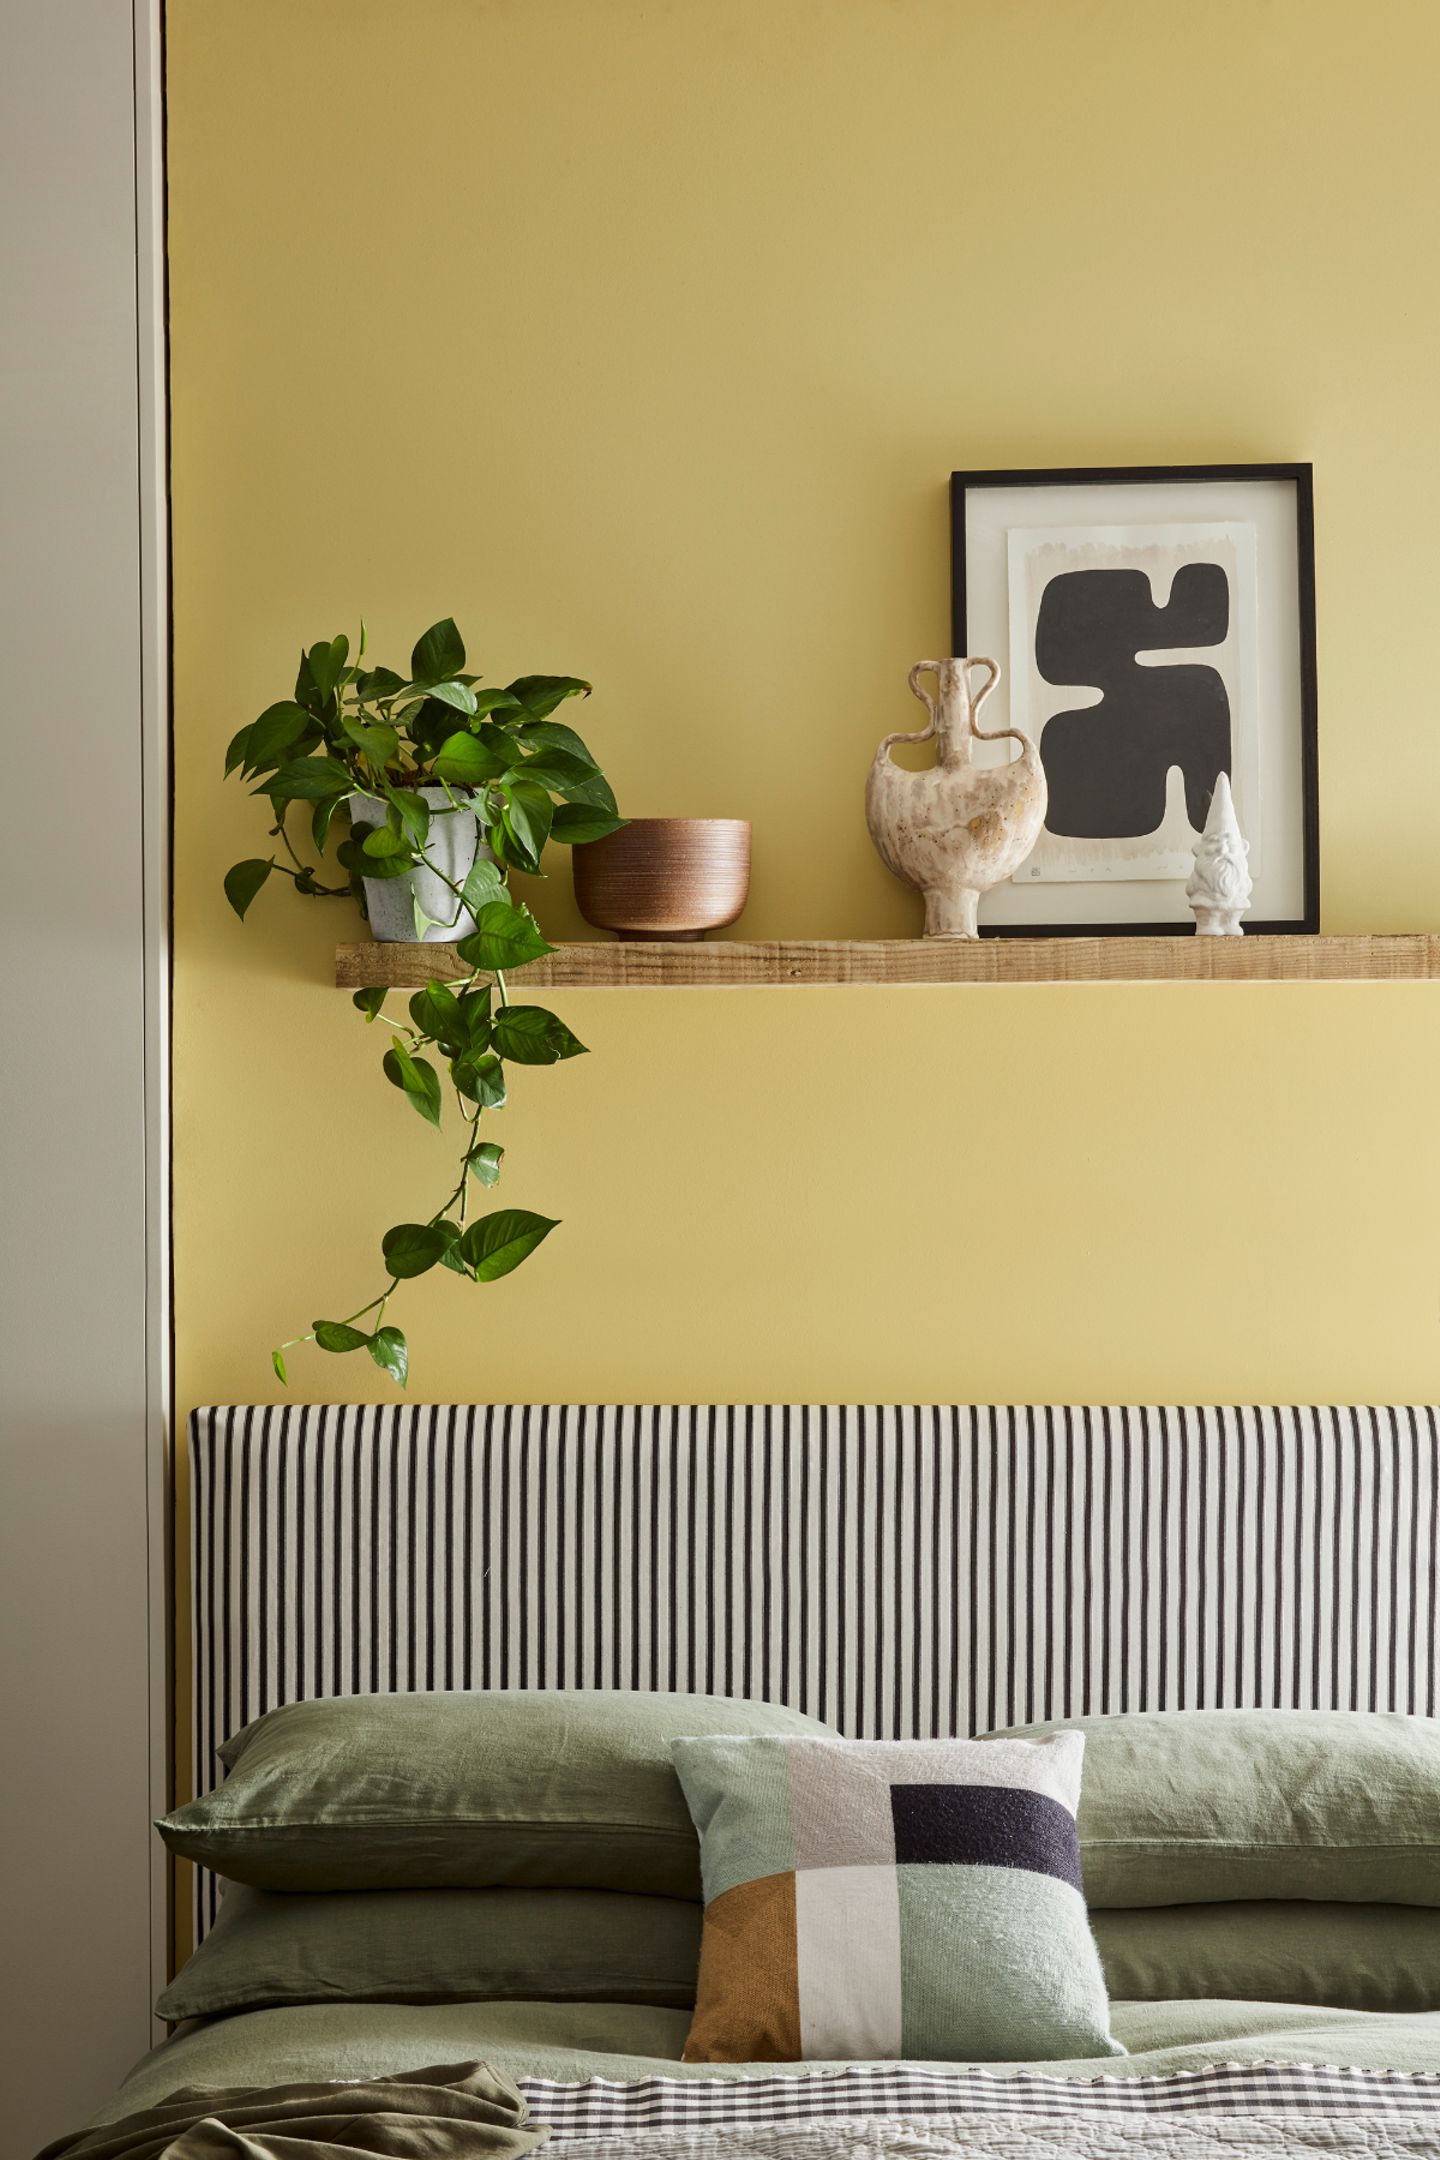 Gelbe Wand mit Regalbrett mit Deko und Grünpflanze hinter Betthaupt